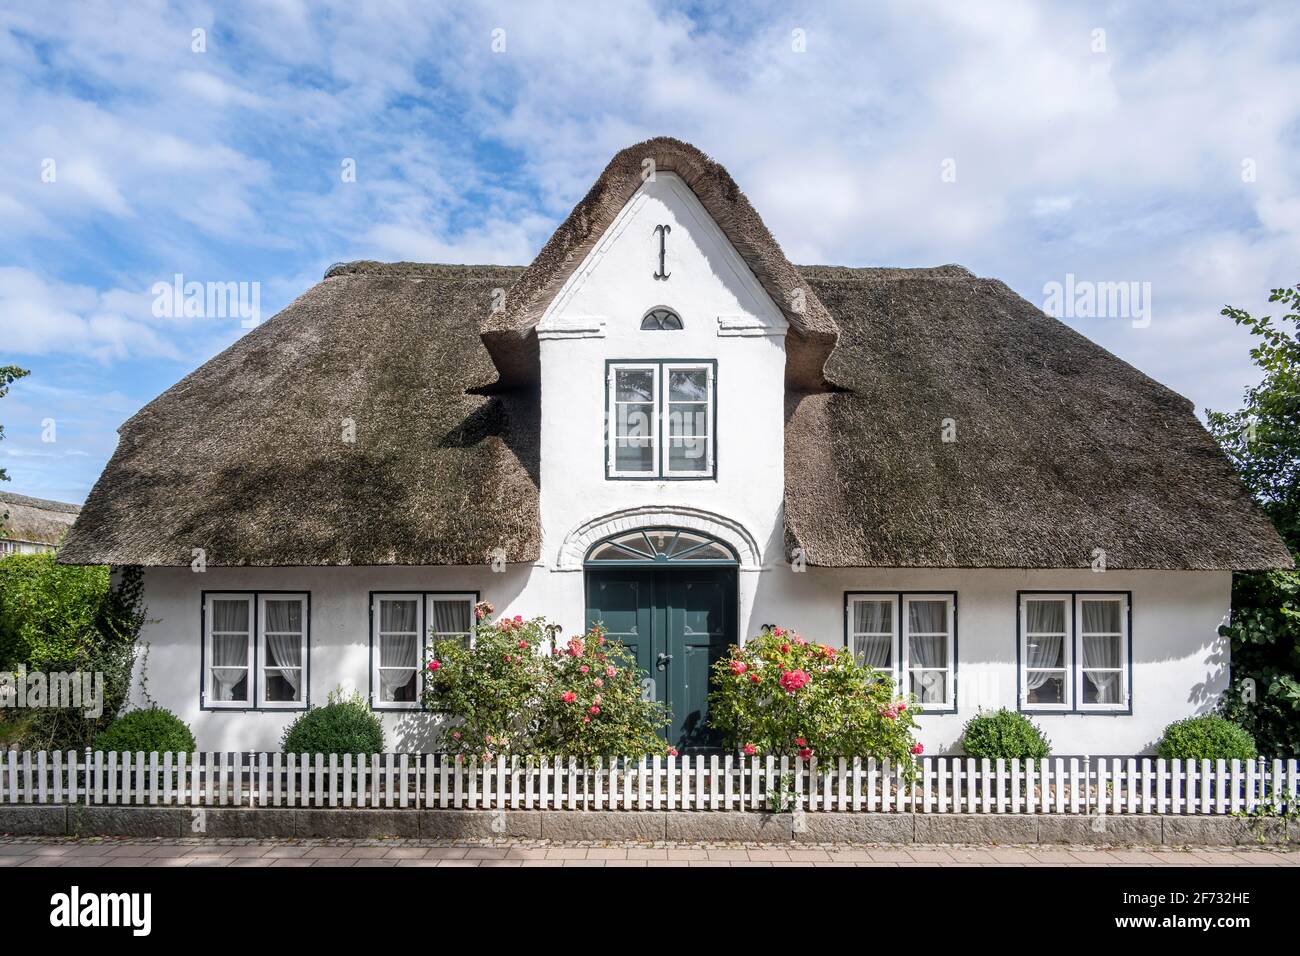 Friesisches Haus mit Reetdach, Keitum, Sylt, Nordfriesland, Schleswig-Holstein, Deutschland Stockfoto